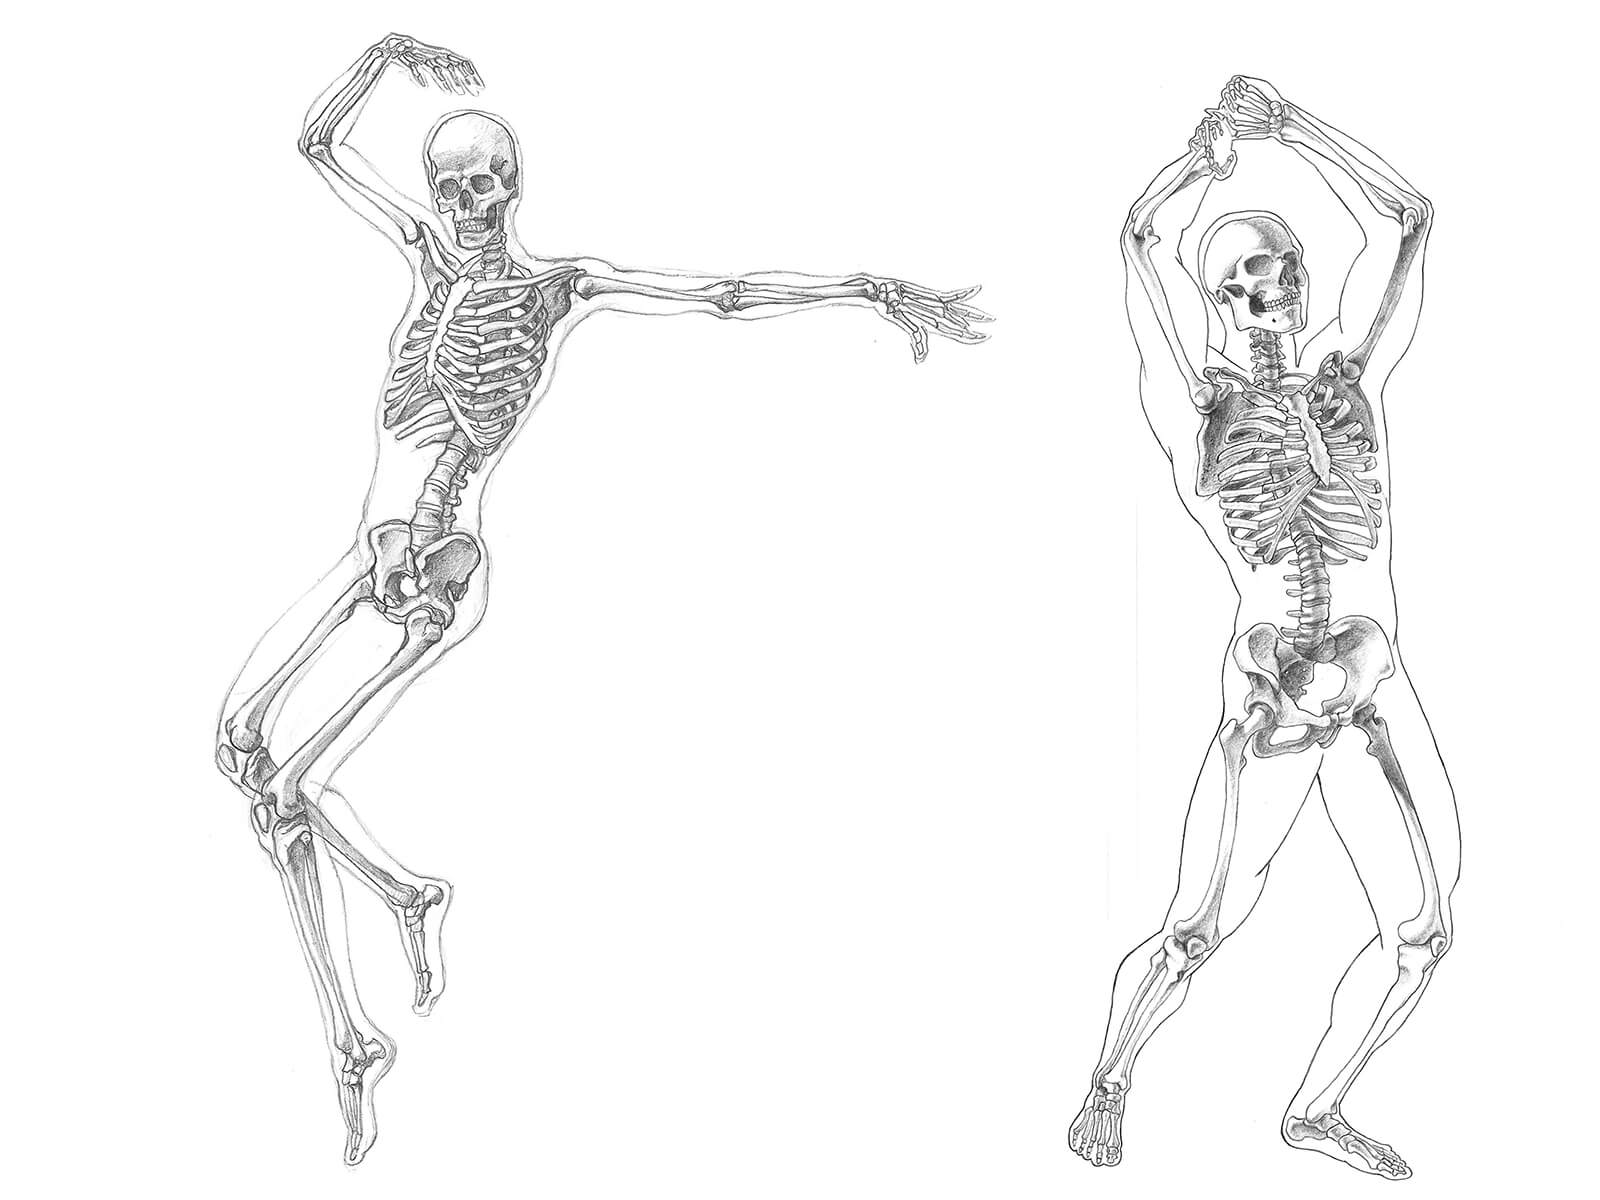 Bocetos anatómicos en blanco y negro de dos esqueletos humanos, uno en una pose de baile y el otro haciendo la pantomima de levantar un hacha.